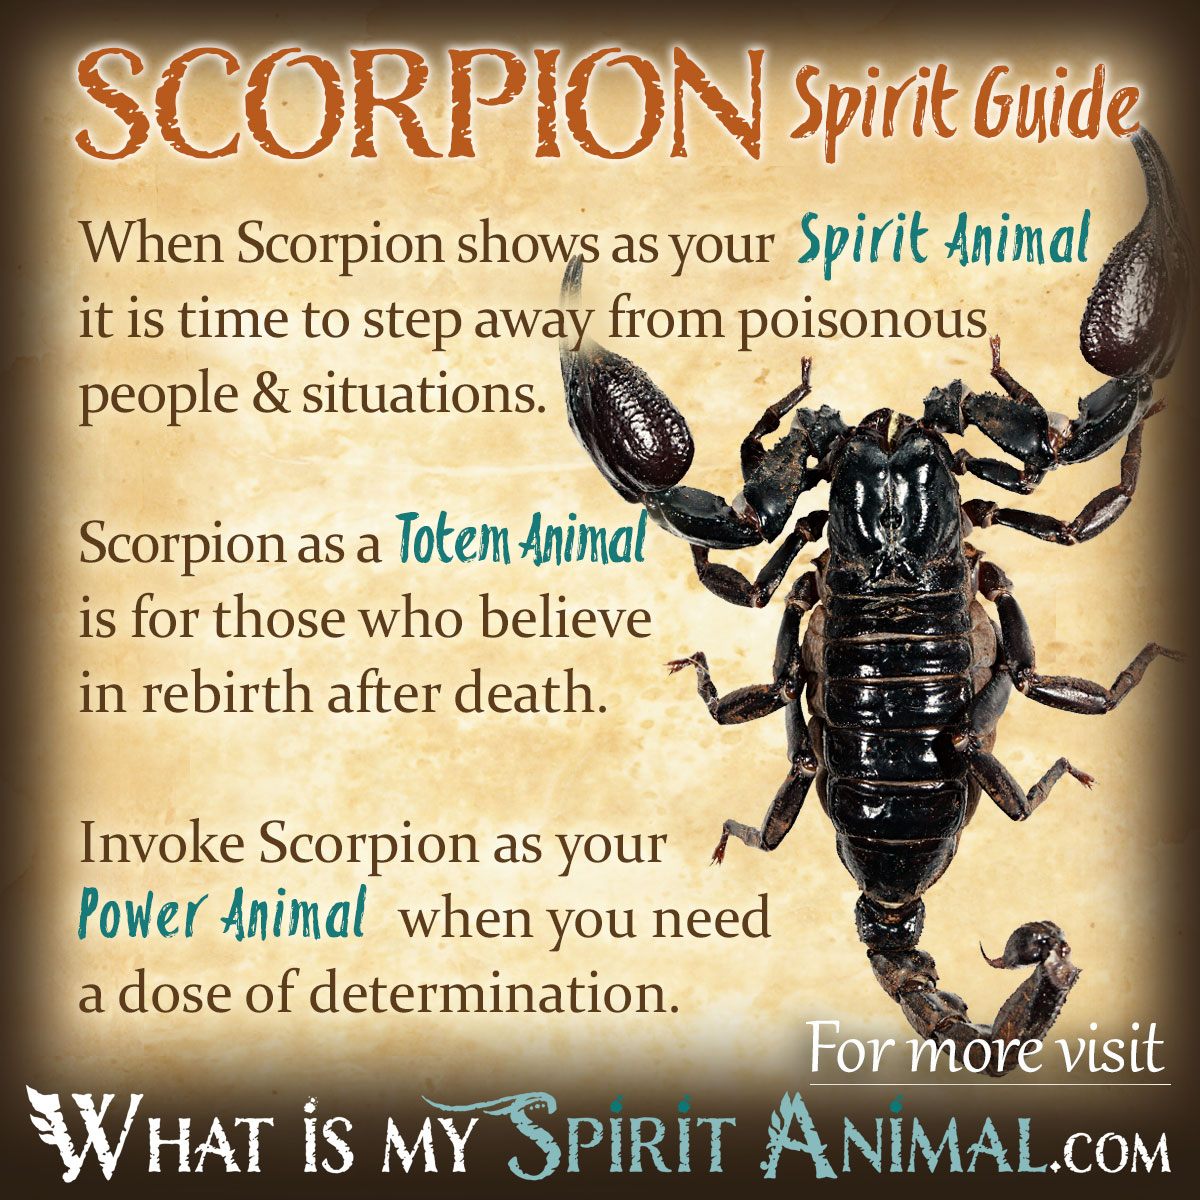  9 Att avslöja mysteriet: Förstå symboliken bakom skorpiondrömmar